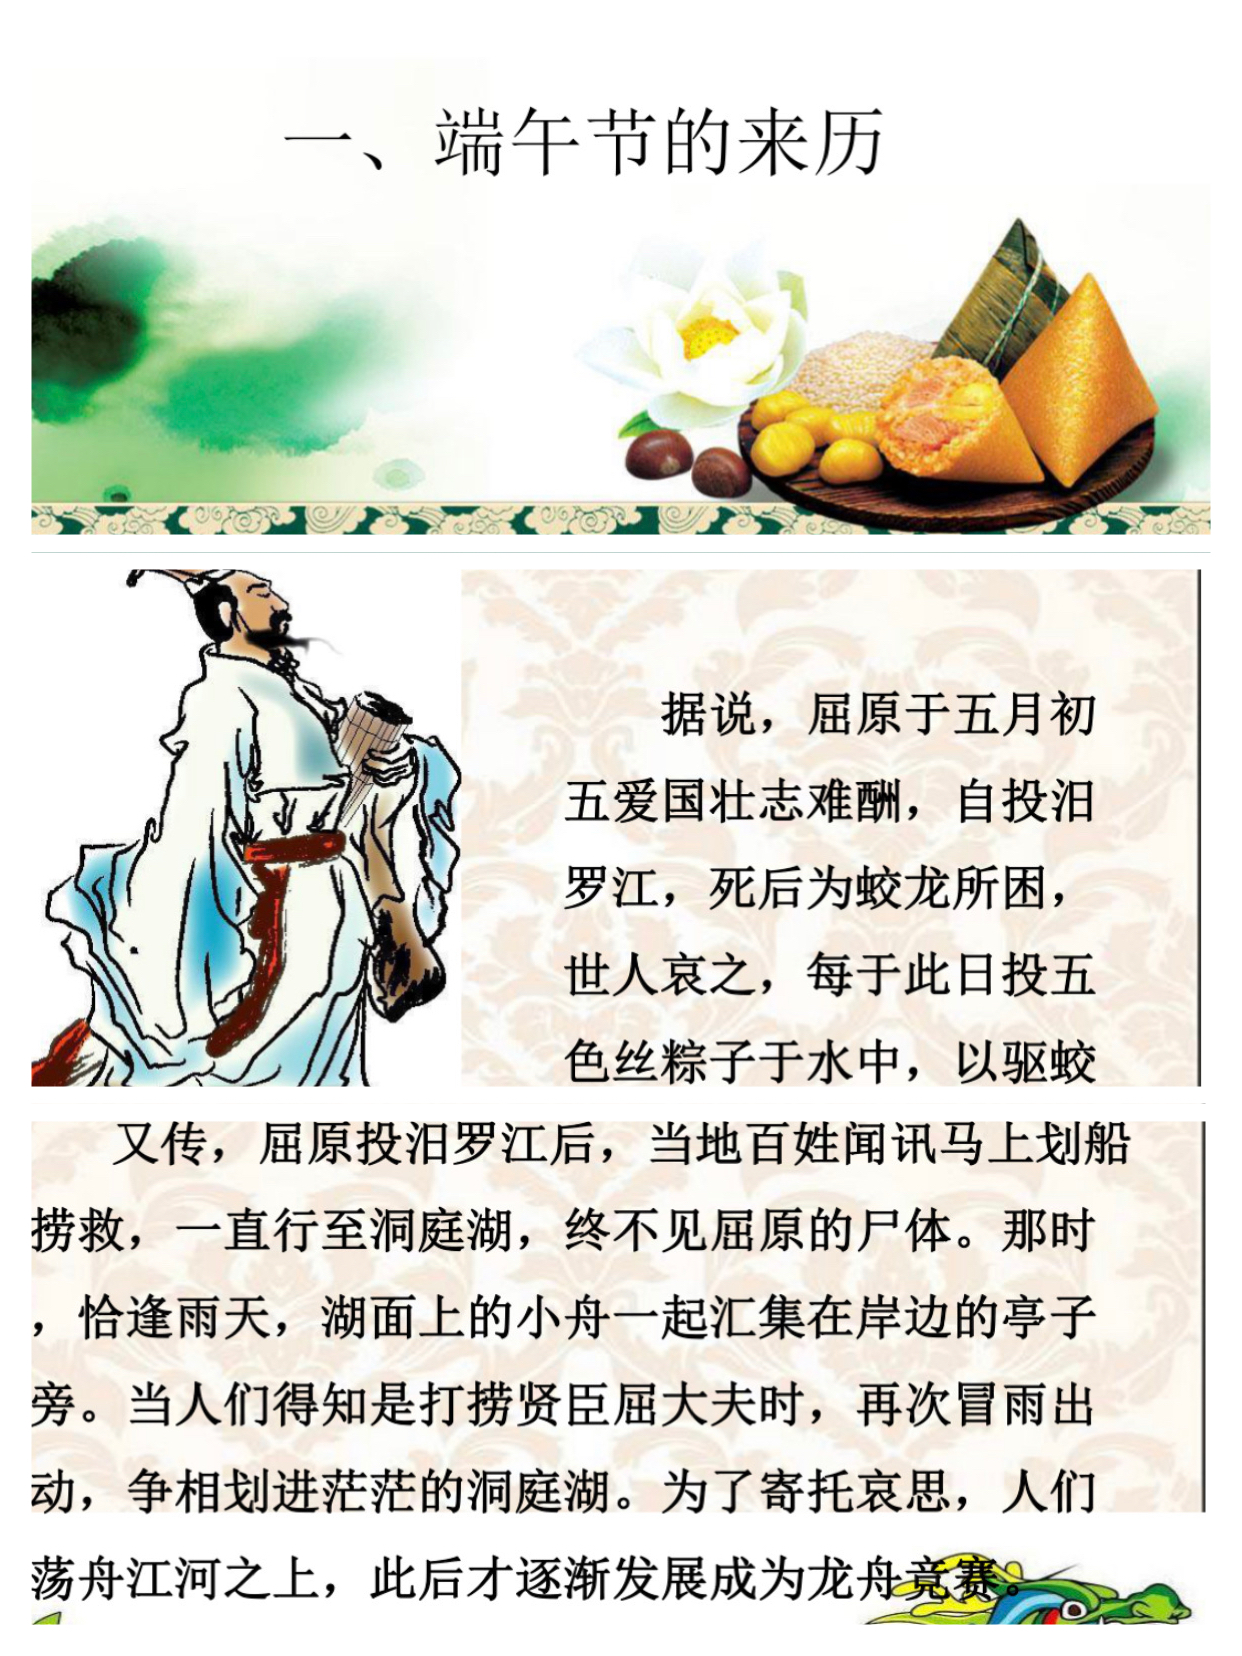 ：端午节的起源和屈原，望国人千万不要遗忘了中华文化